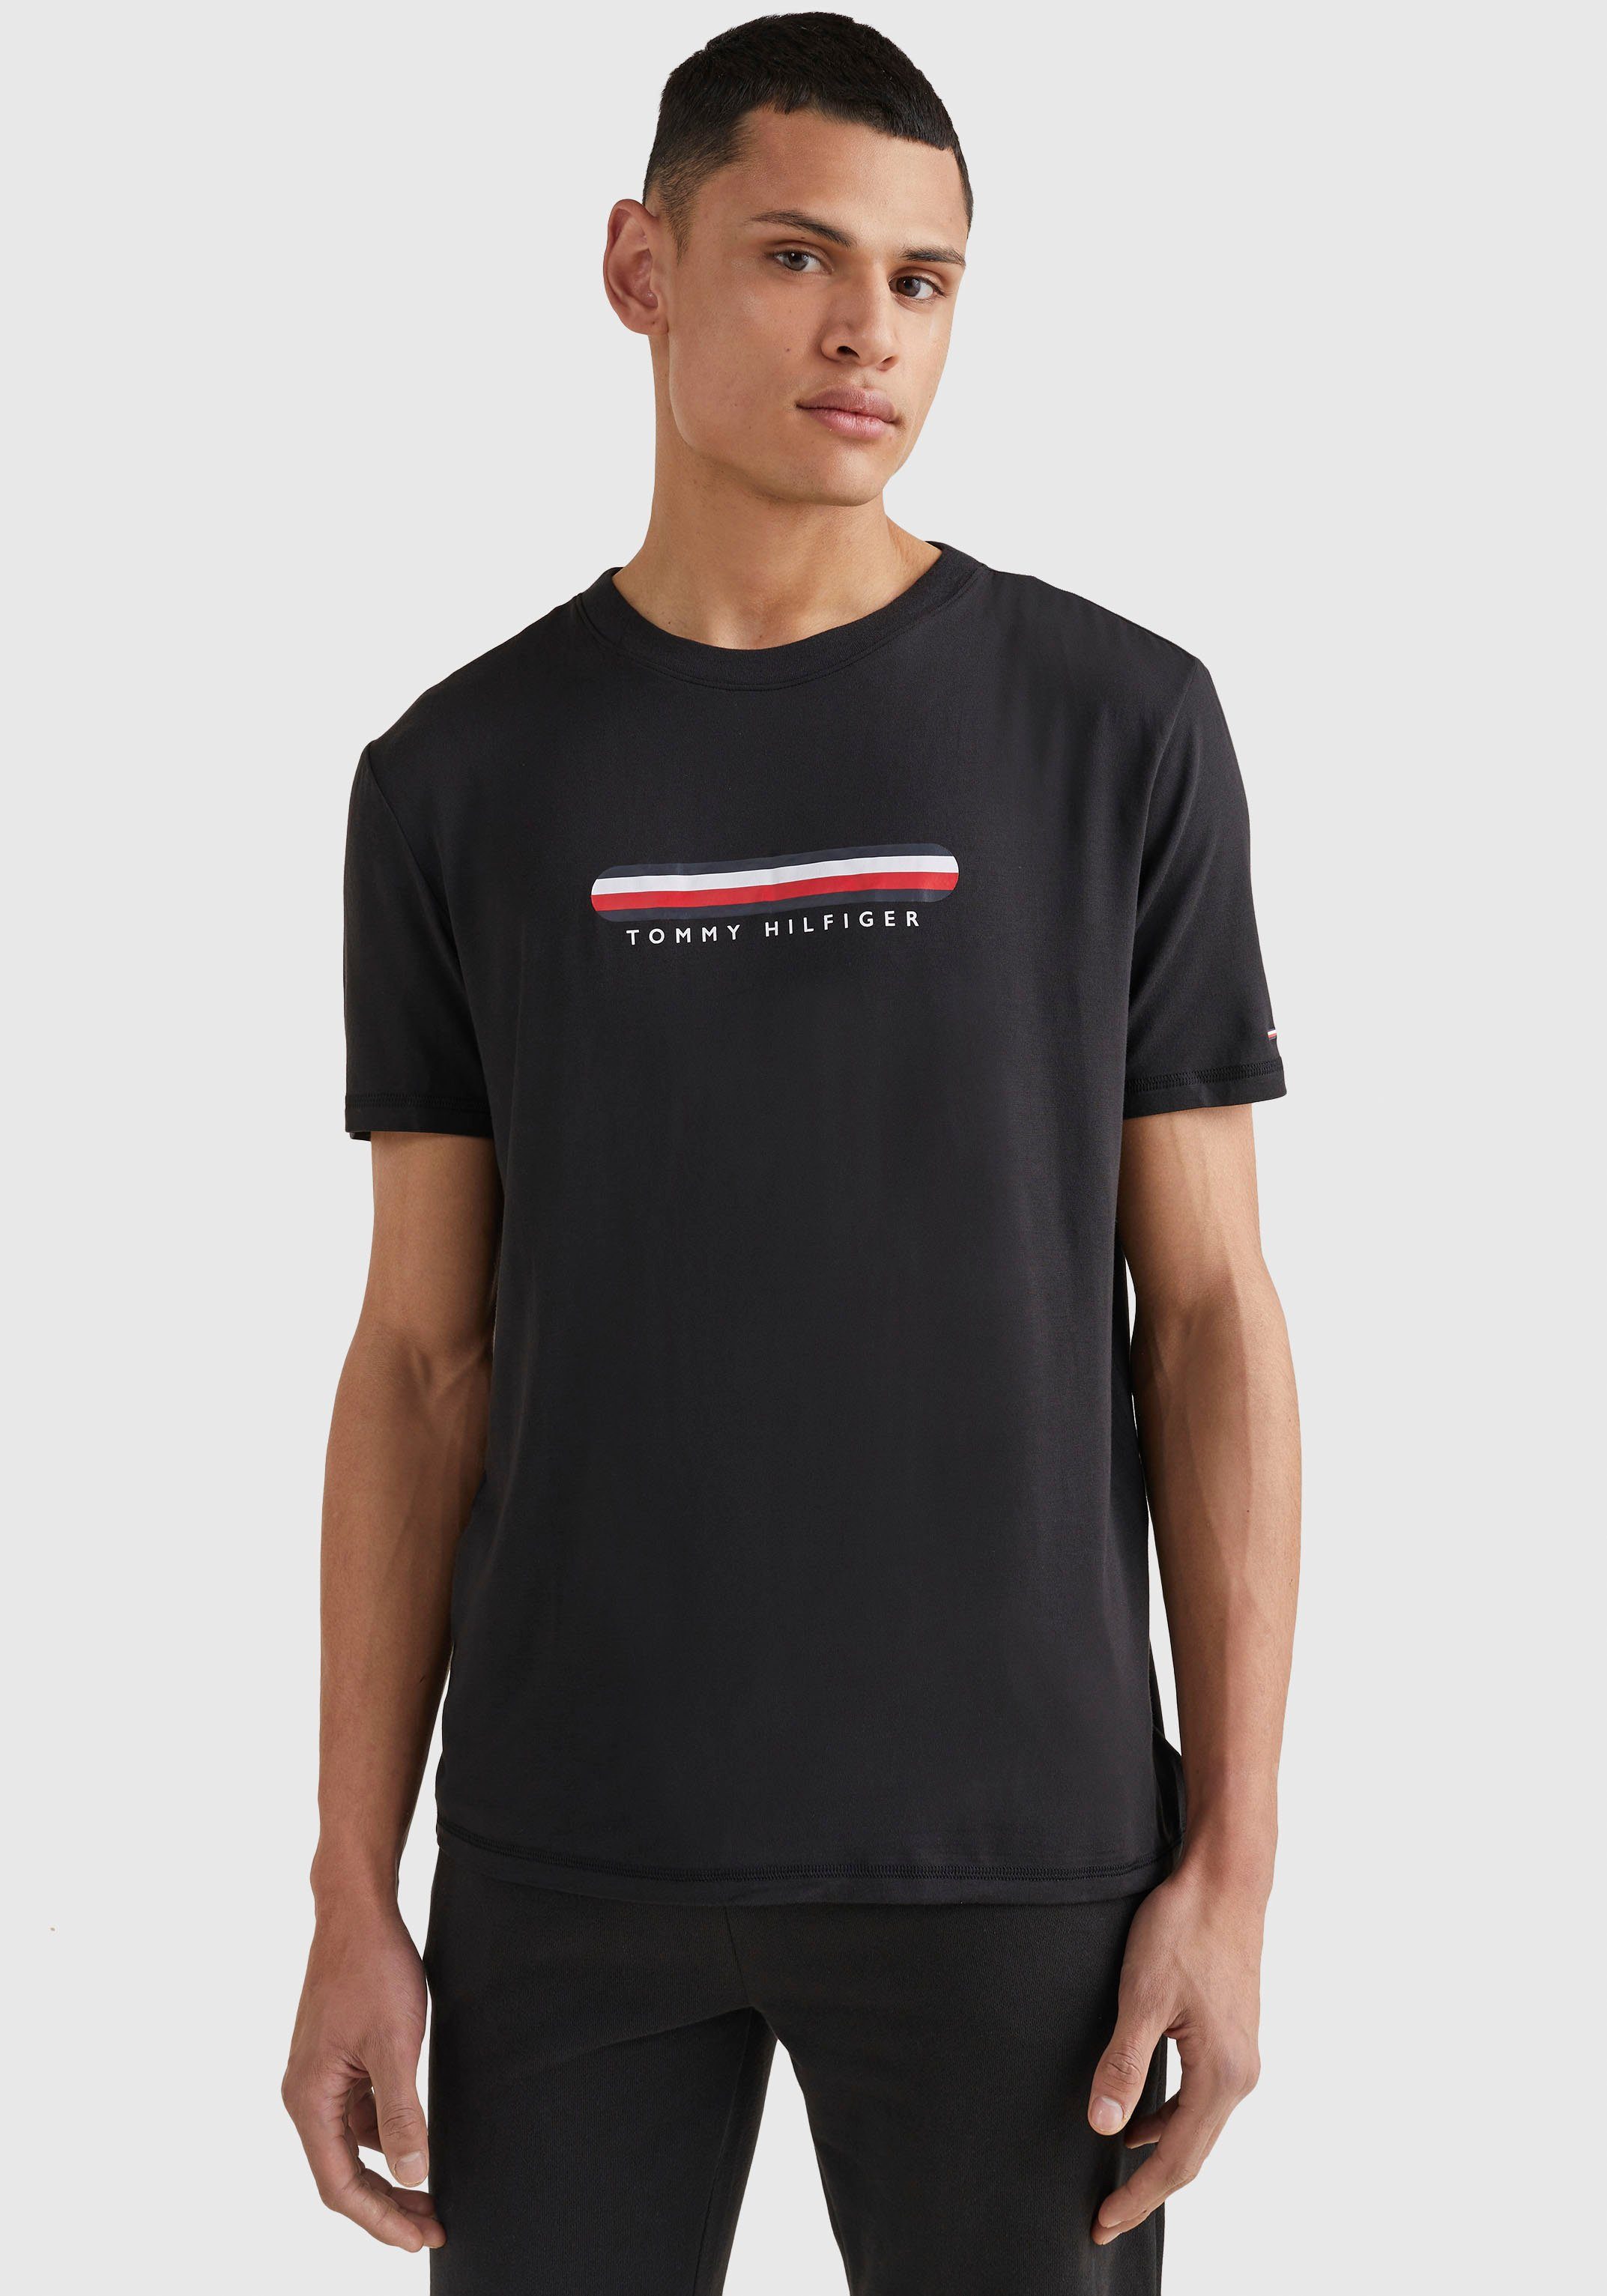 Hilfiger Tommy T-Shirt mit Tommy Streifen Underwear